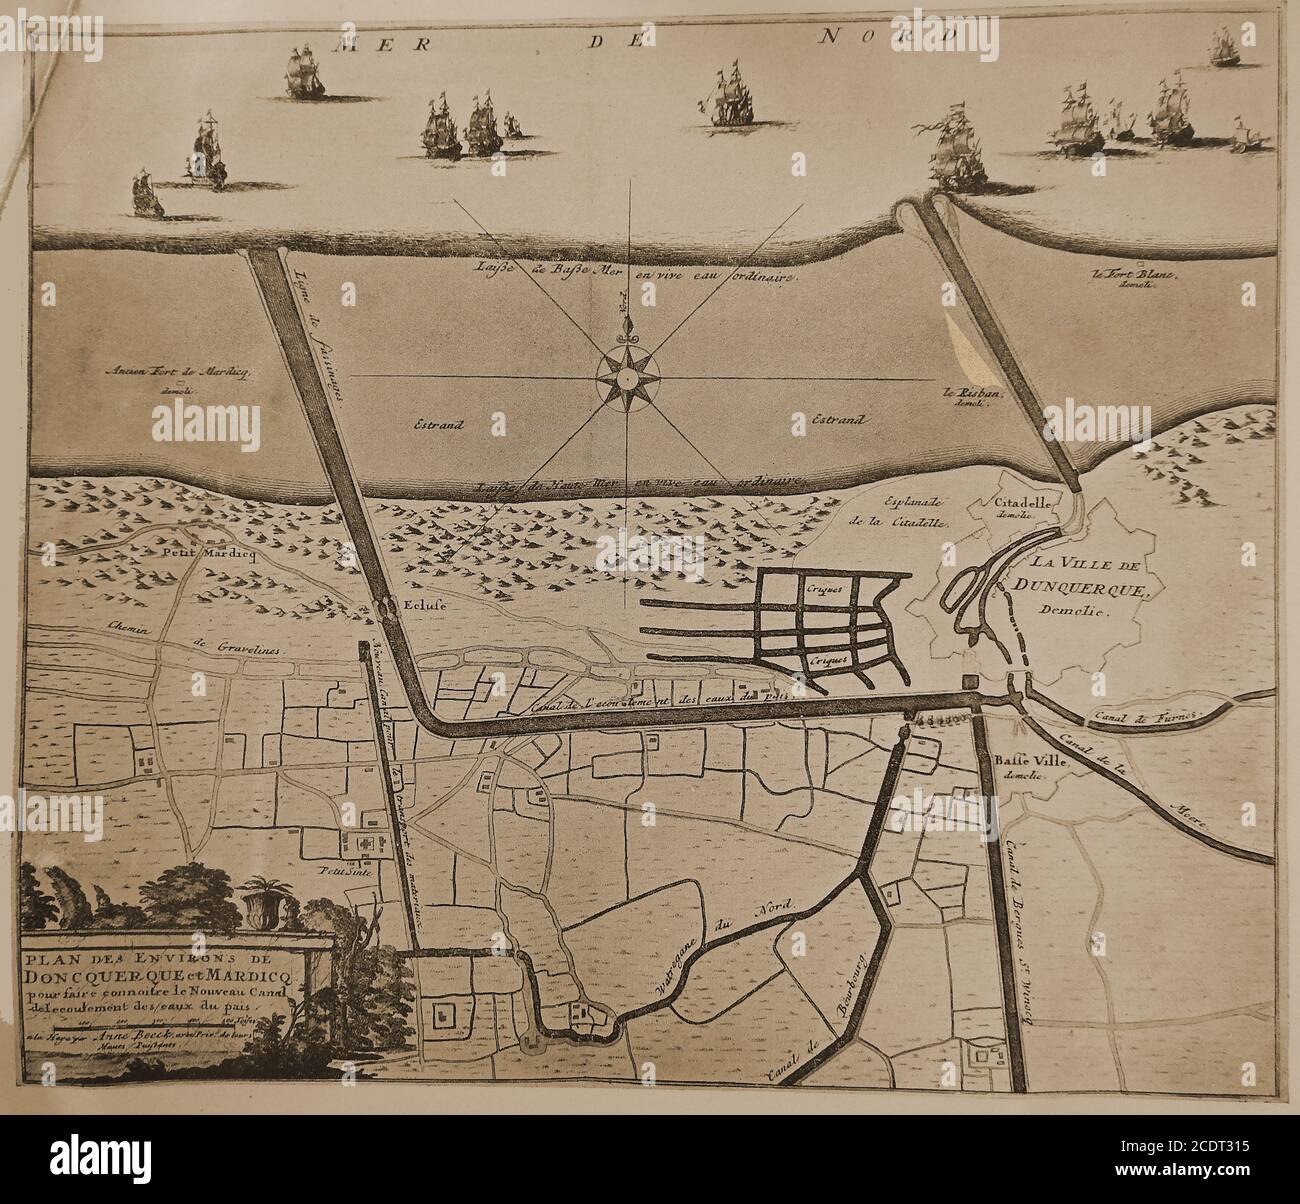 Eine Karte von Dunkirk aka Dunkerque aka Duinkerke (und Little Mardicq) aus dem Jahre 1725, die das neue Kanalsystem zeigt. Das Fort Blanc (erbaut 1701) ist zu sehen, aber alle Anlegestellen, Festungen und Hafenanlagen wurden 1713 im Rahmen des Vertrags von Utrecht abgerissen. Zwischen damals und der Zeit, als die Karte erstellt wurde, war das Gebiet ein Treffpunkt von Piraten und Privathaushalten. Stockfoto